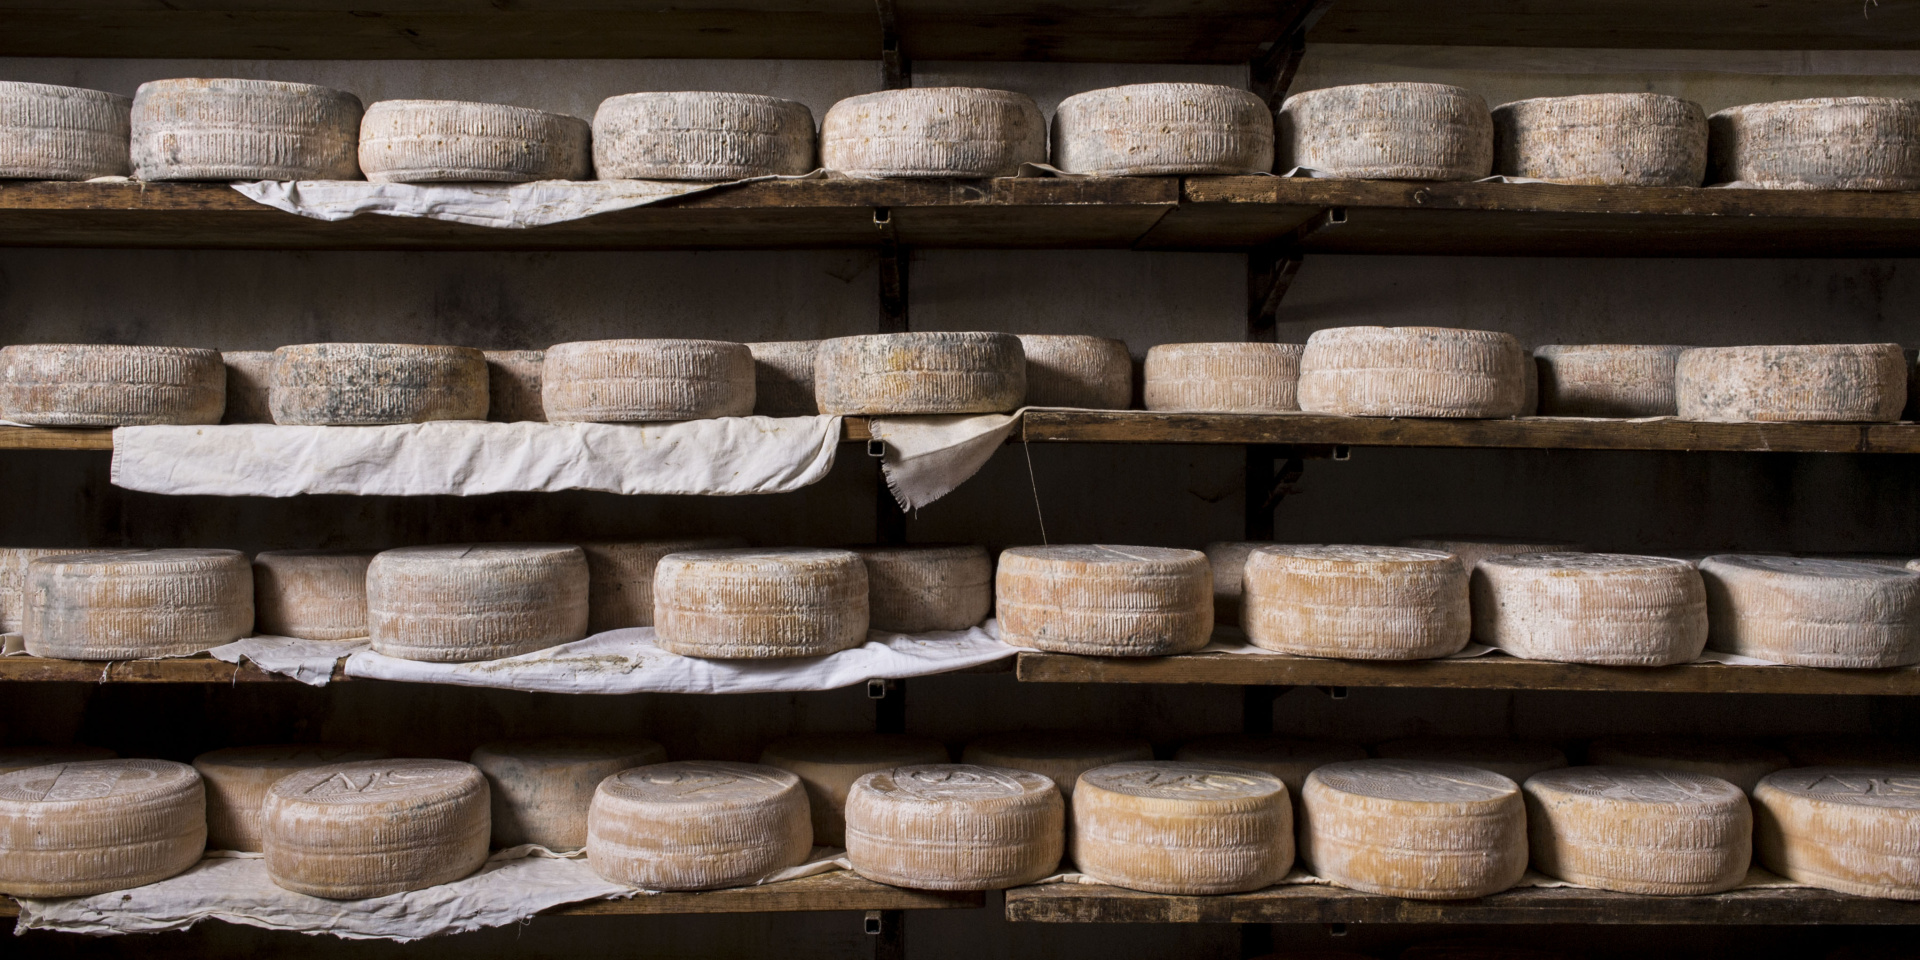 Forme di Strachìtunt Dop, formaggio erborinato a due paste prodotto esclusivamente in val Taleggio e Val Brembilla.